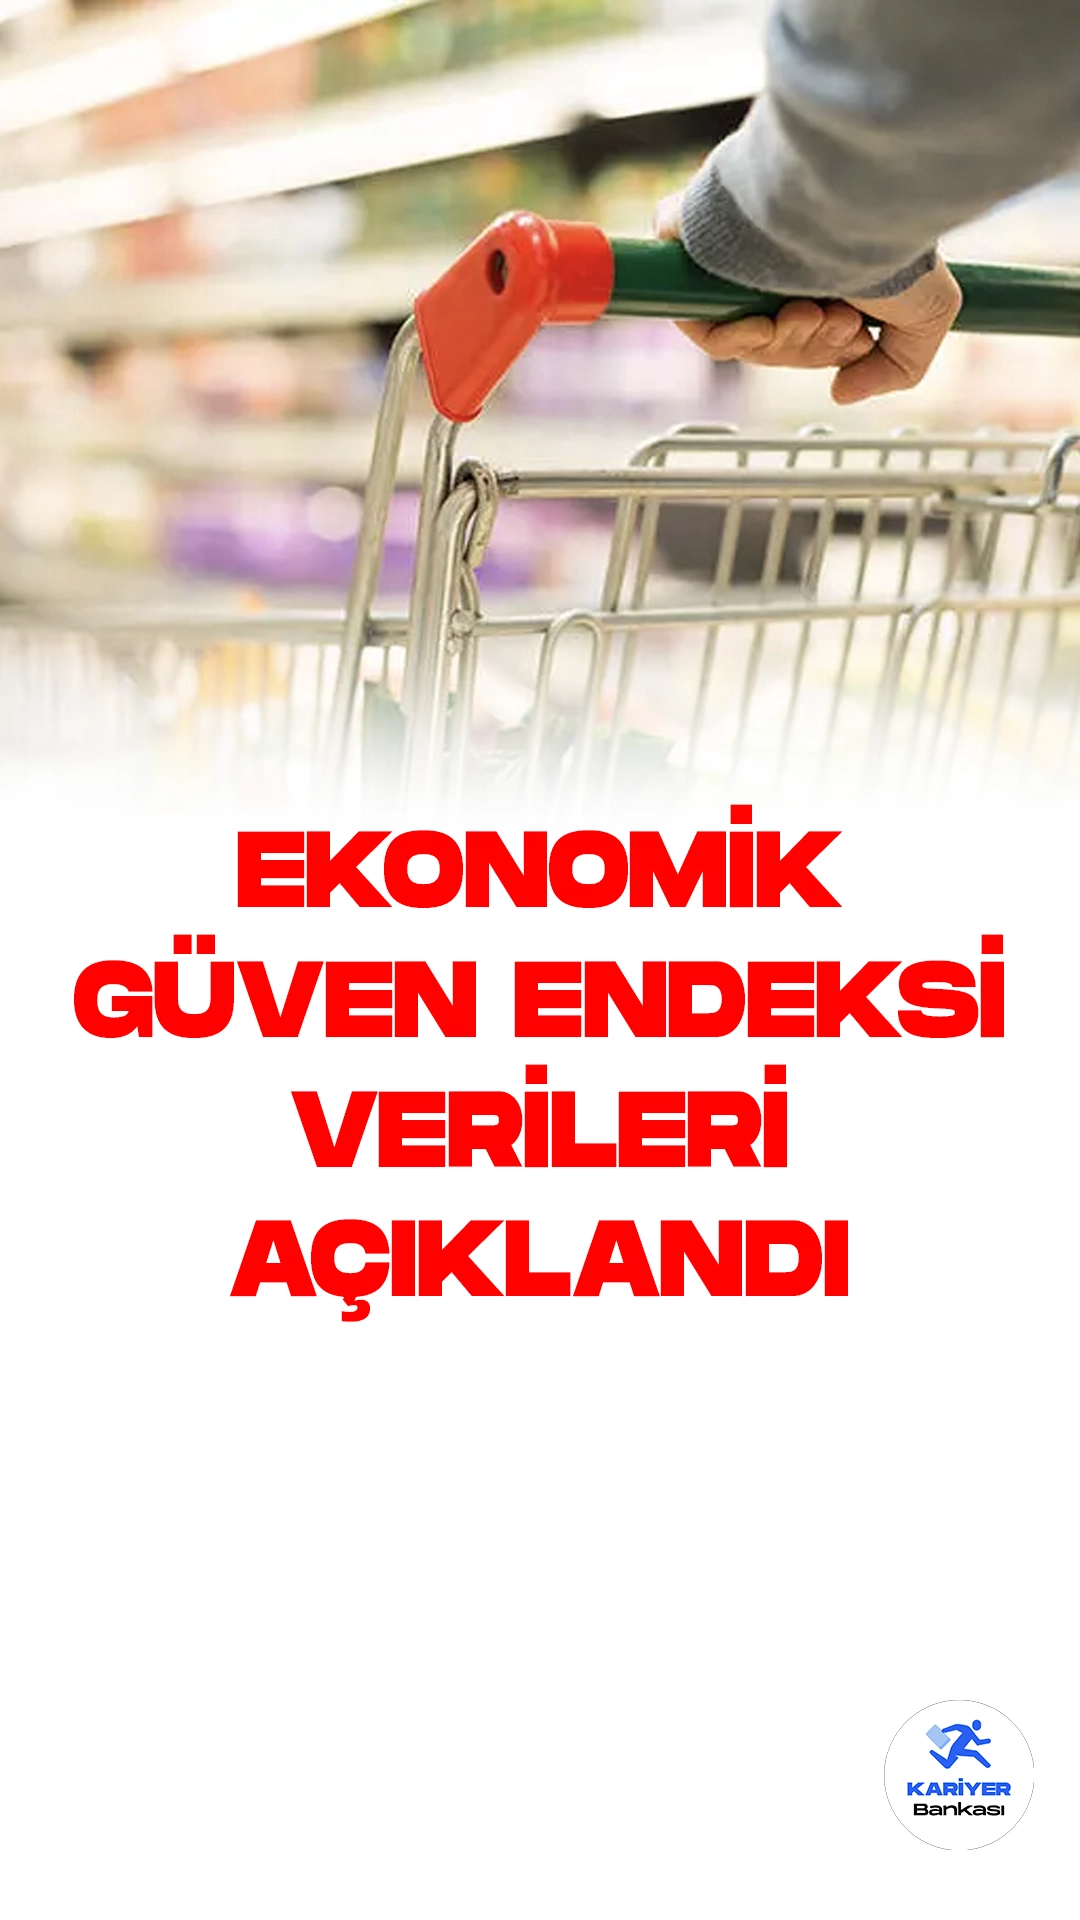 Ekonomik Güven Endeksi Haziran Ayında Yüzde 2,5 Azaldı.Türkiye İstatistik Kurumu, haziran ayına ilişkin ekonomik güven endeksi verilerini yayımladı. Haziran ayında ekonomik güven endeksi bir önceki aya göre yüzde 2,5 azalarak 101,1 değerini aldı.